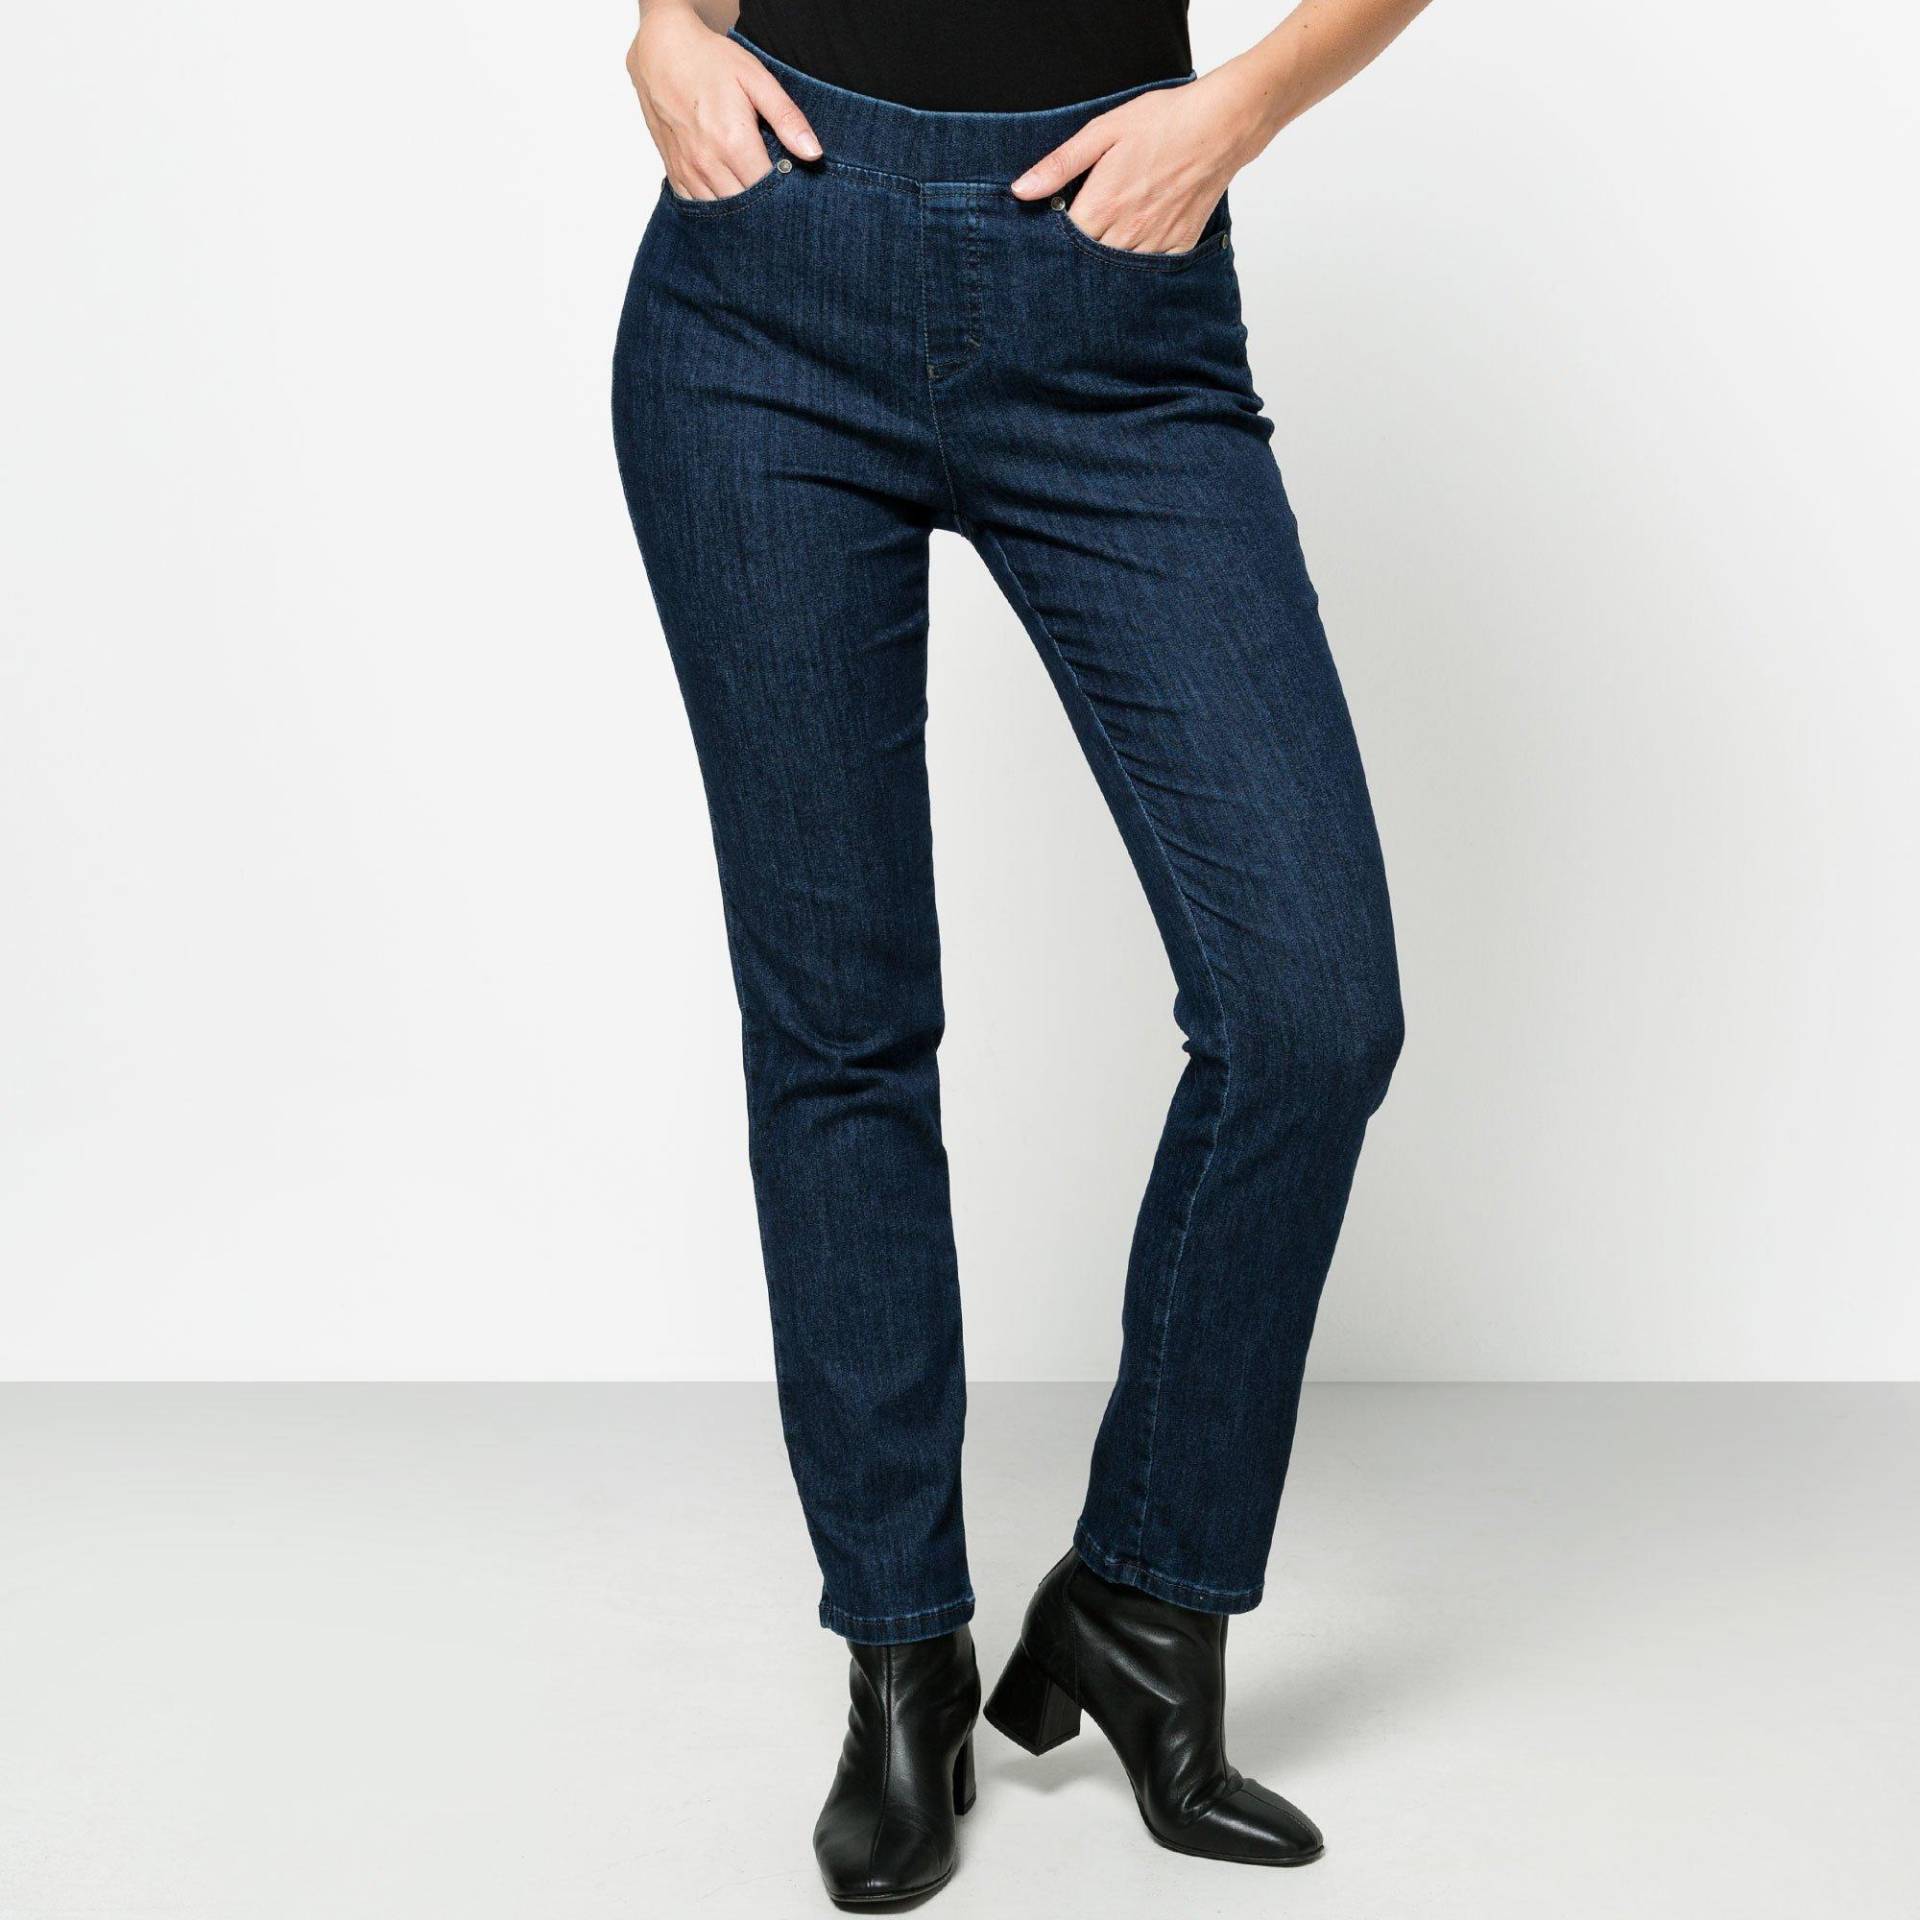 Jeans, Slim Fit Damen Blau Denim 42 von ANNA MONTANA